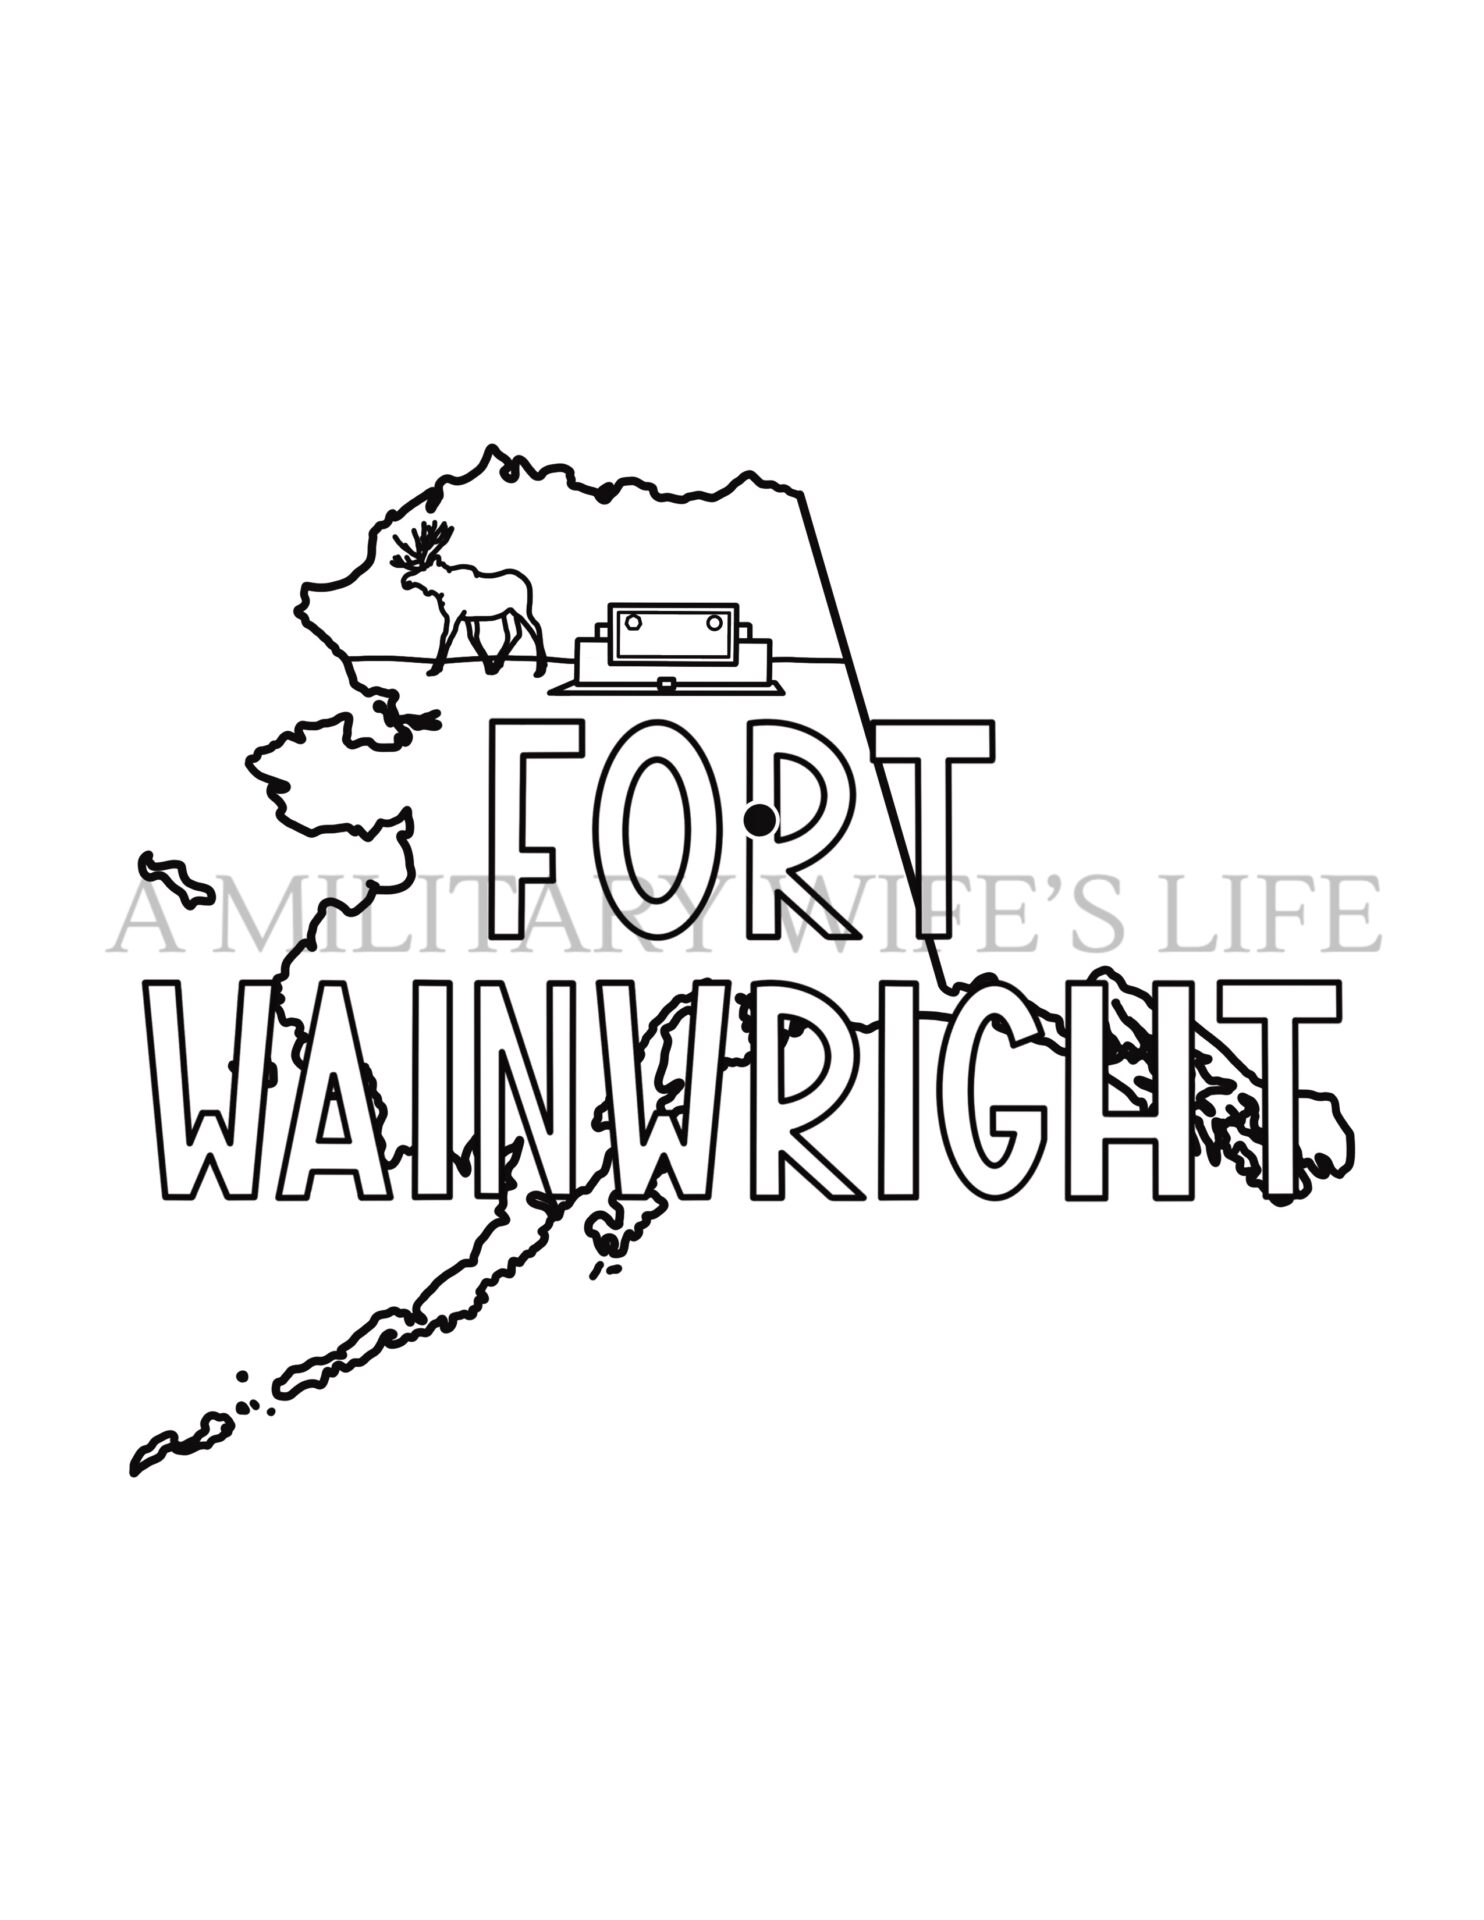 Fort-wainwright